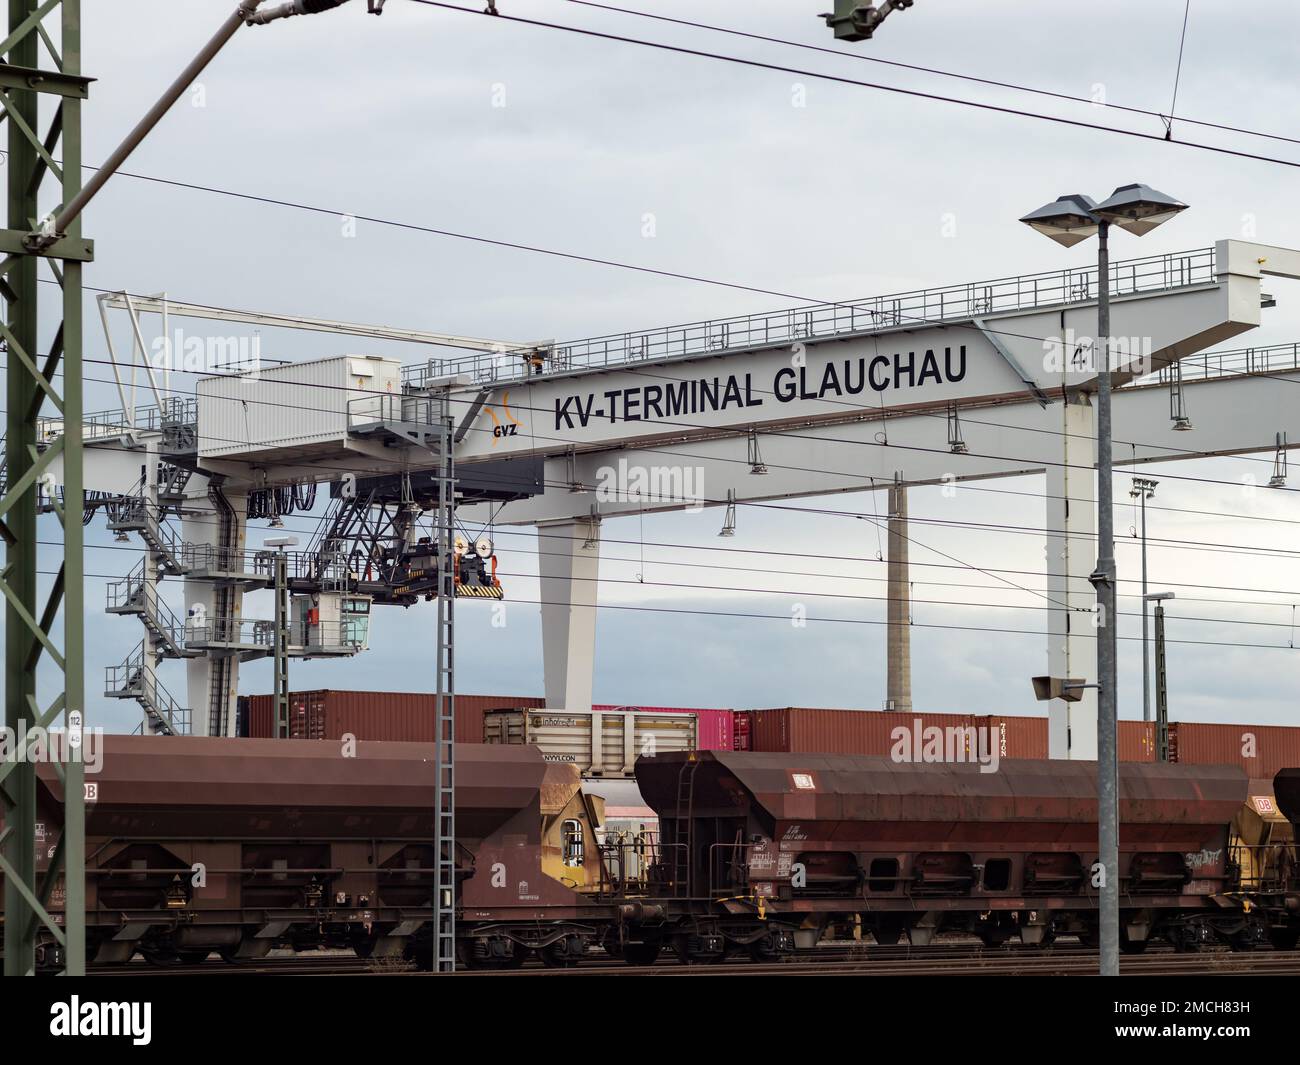 GRU per container kV-Terminal come parte della logistica. Enorme struttura in acciaio utilizzata per il trasporto di container. La gru può sollevare 41 tonnellate. Foto Stock